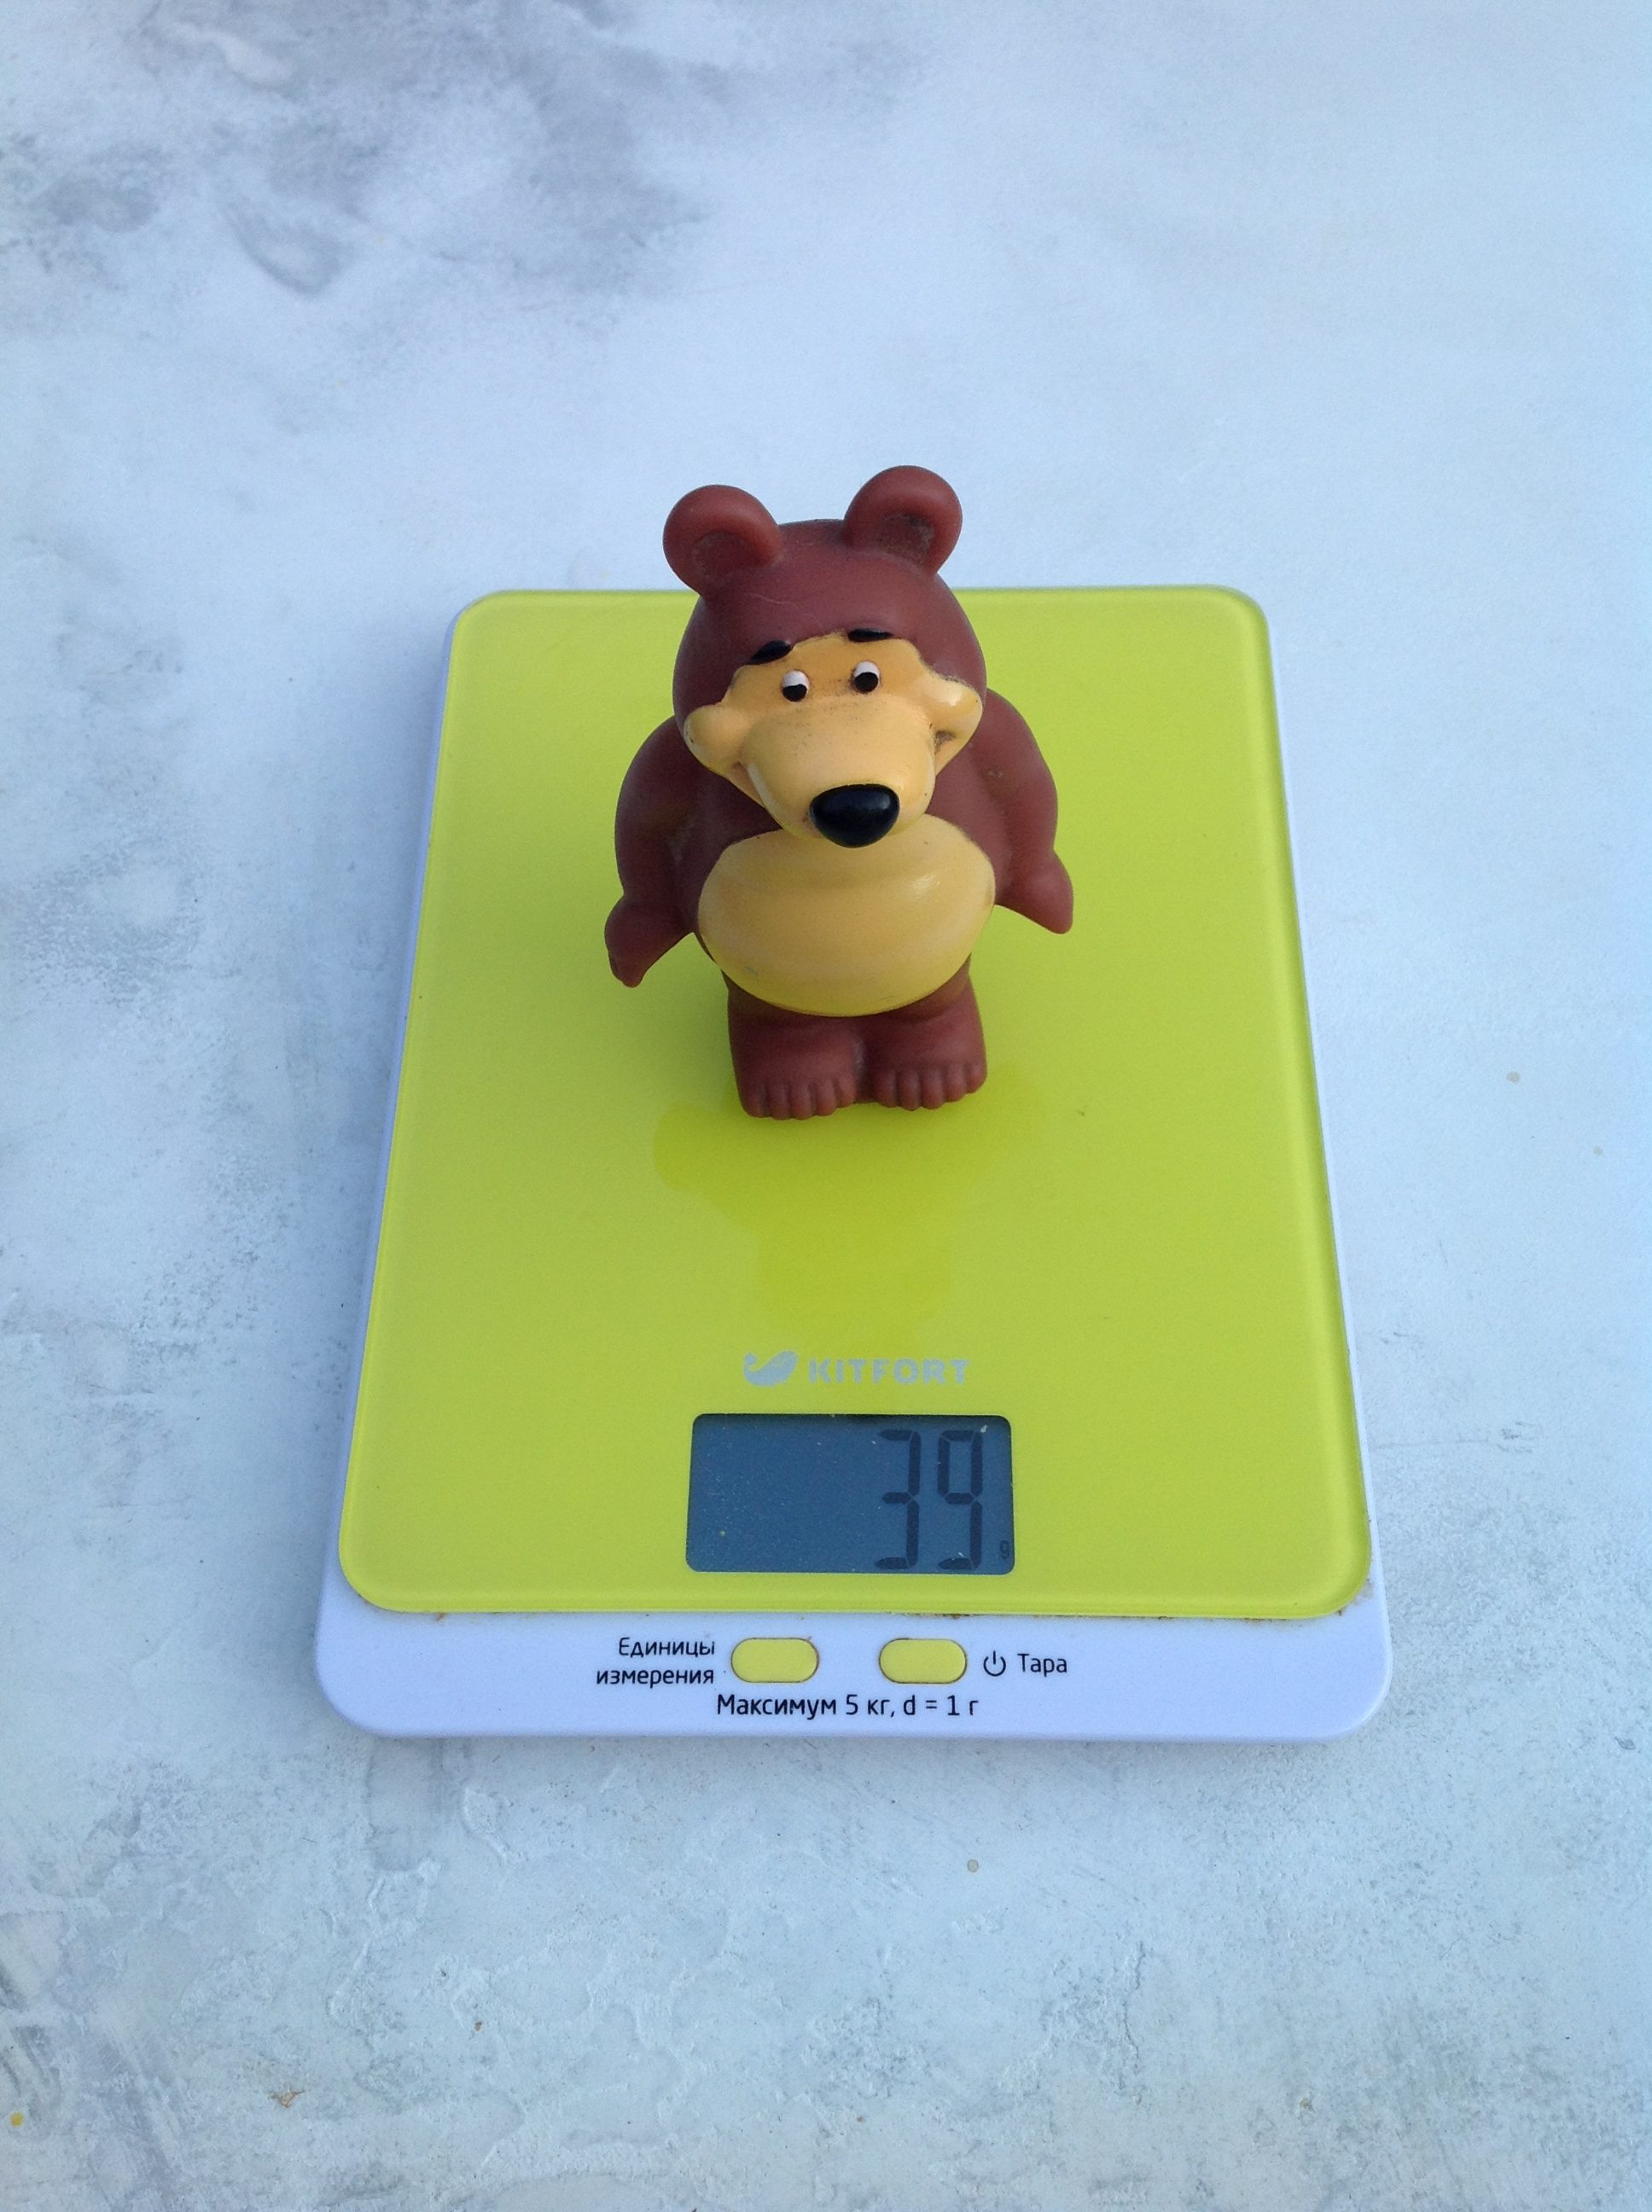 橡胶熊玩具的重量